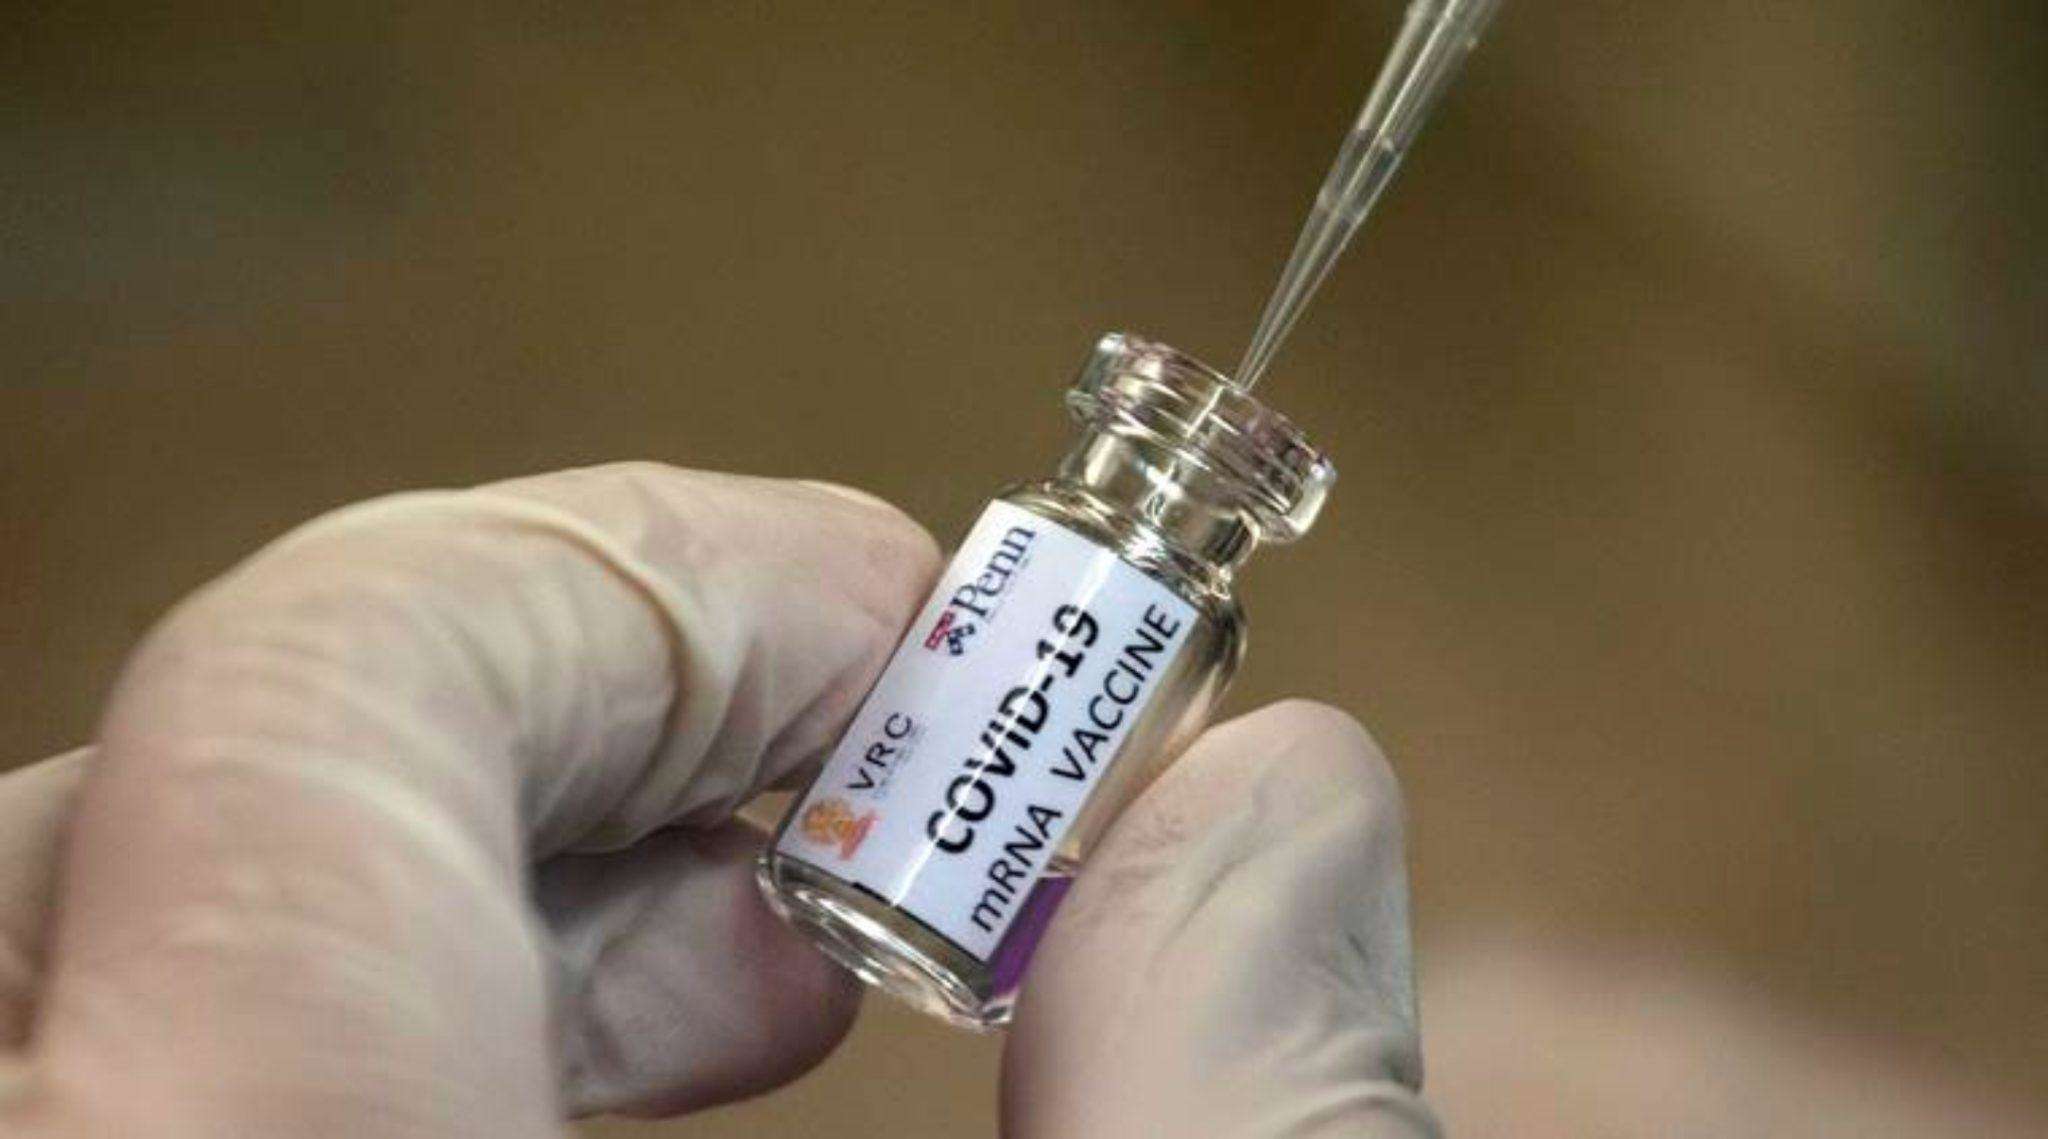 UP Rabies Injection: कोरोना के बजाय लगाया रेबीज का टीका, मचा हंगामा